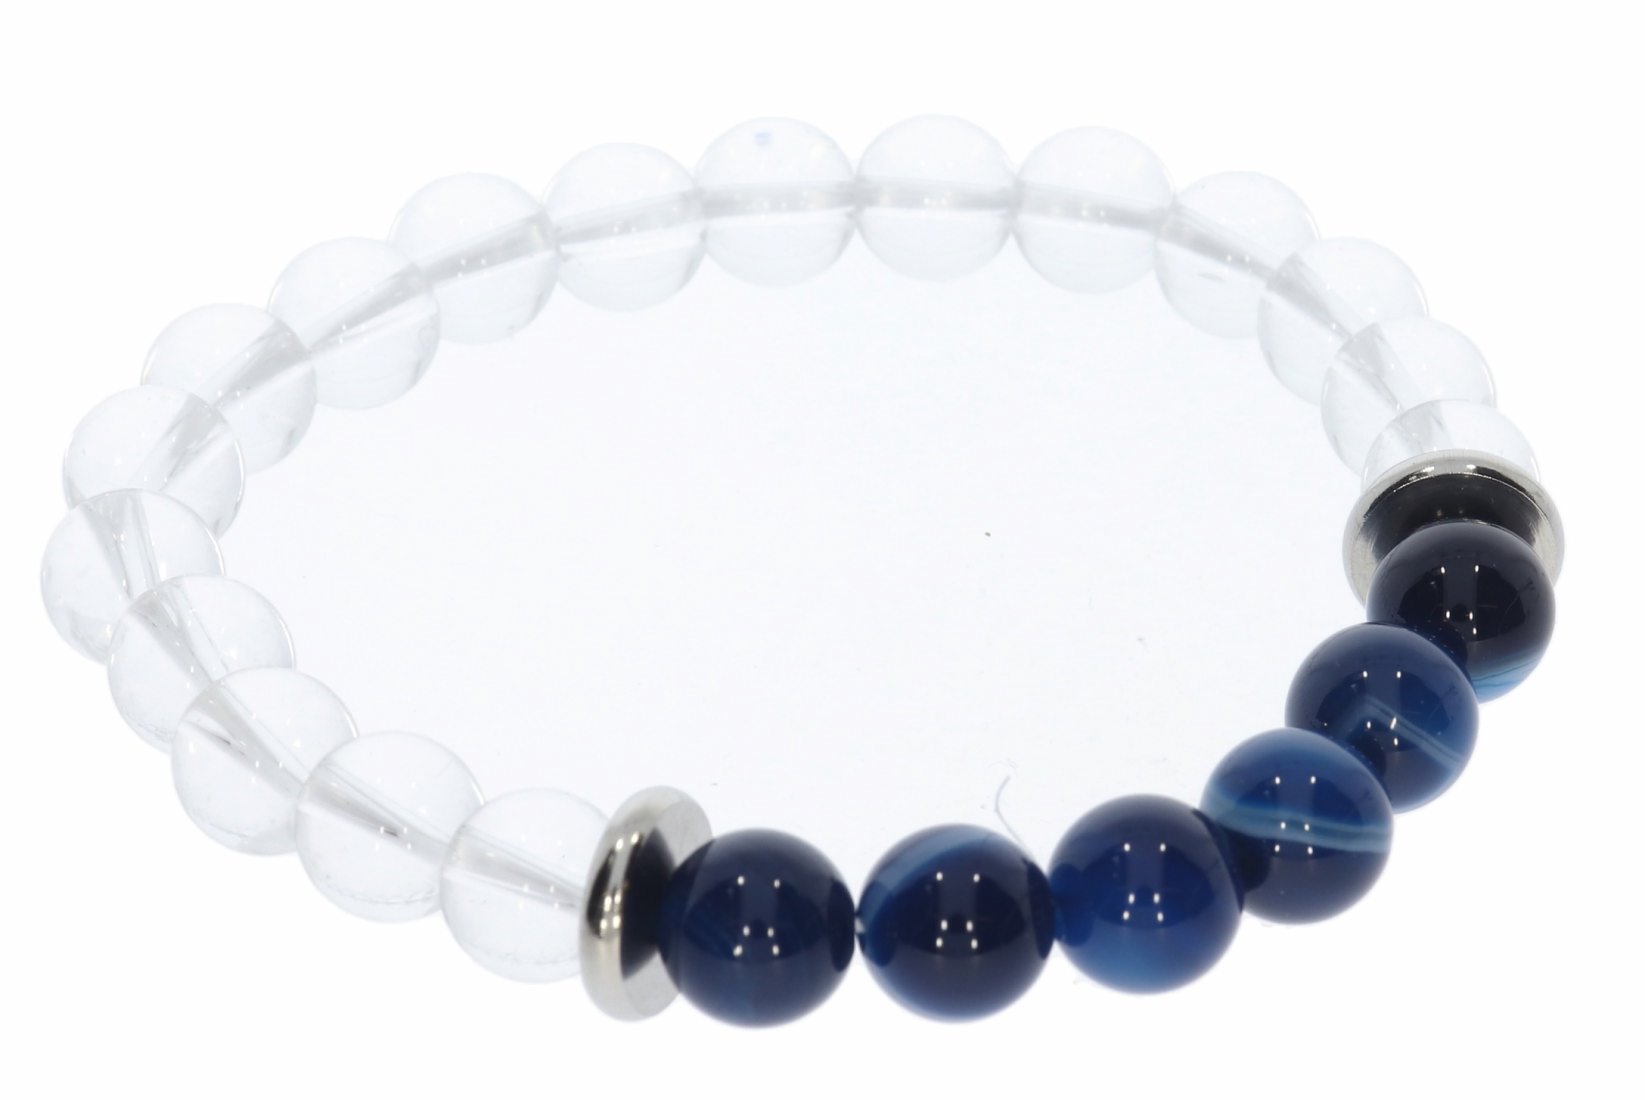 Bergkristall trifft Achat blau Kugel Stretch Armband Edelstahl - individuelle Größe AB41